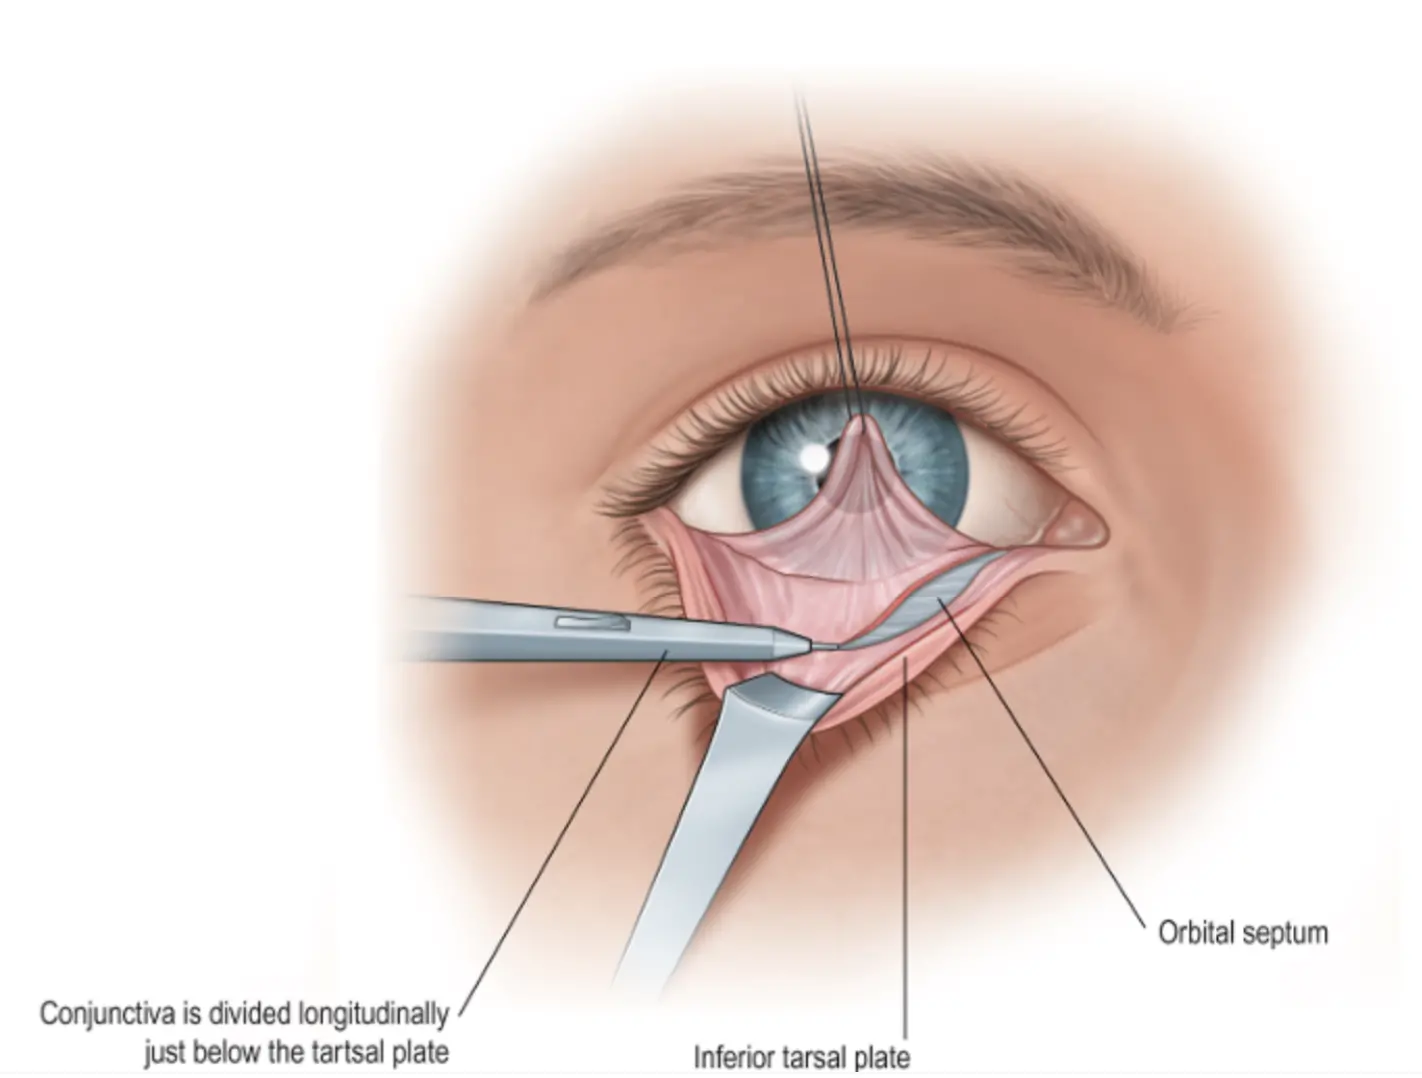 illustration of a blepharoplasty procedure